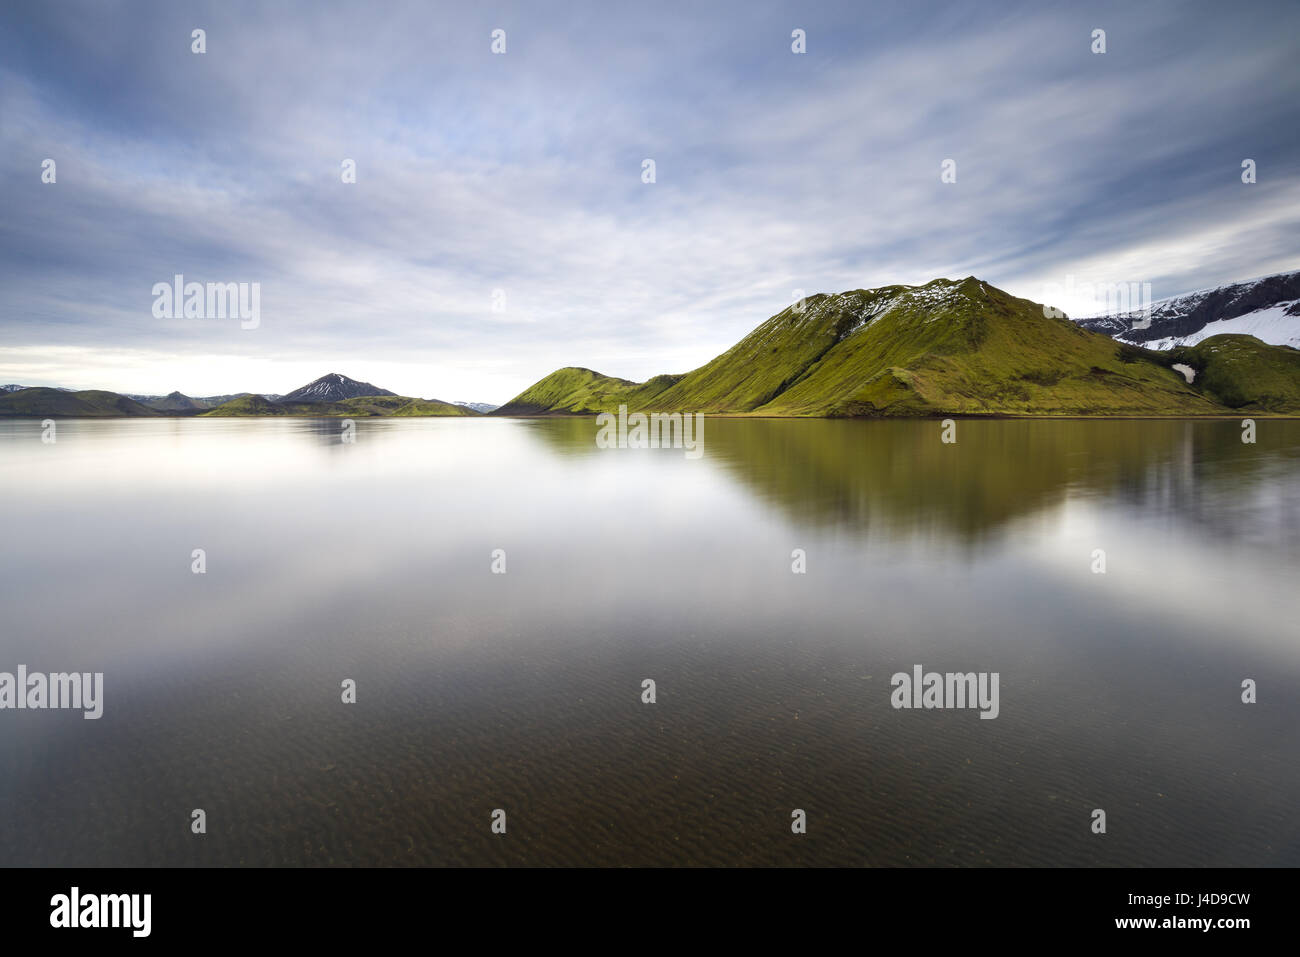 Landmannalaugar hautes terres centrales montagnes avec reflet dans le lac, de l'Islande Banque D'Images